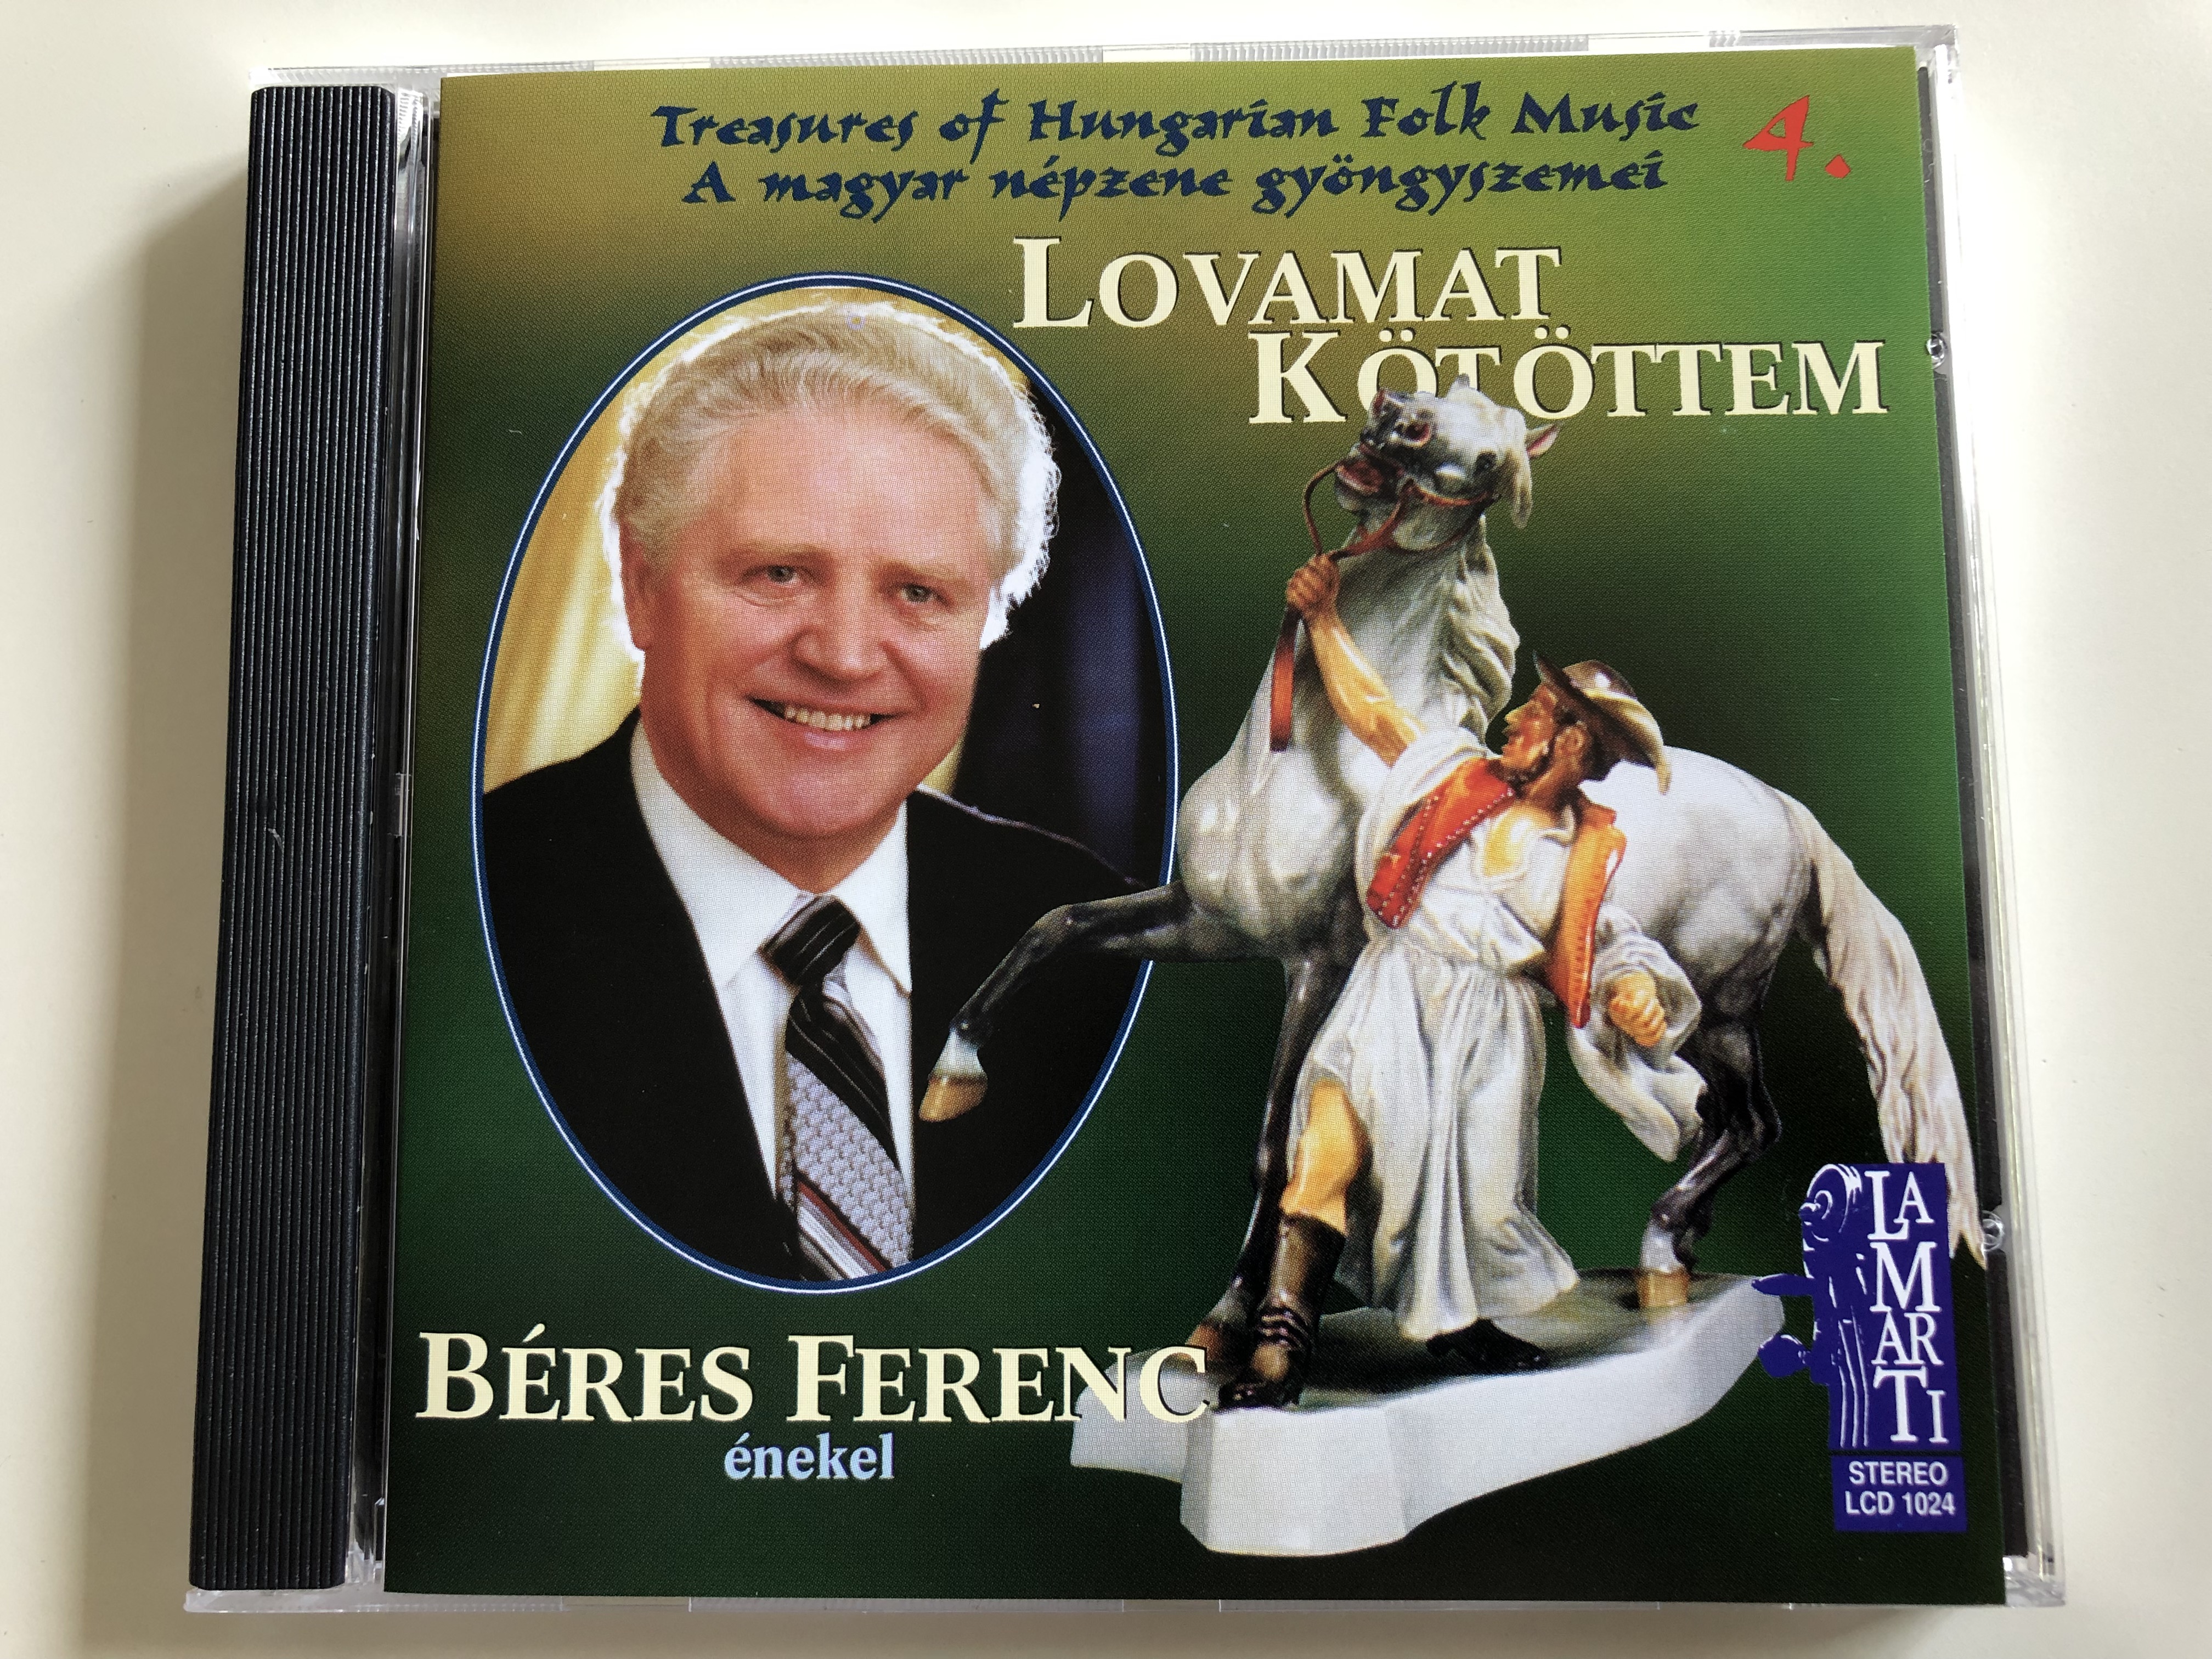 treasures-of-hungarian-folk-music-4.-lovamat-k-t-ttem-b-res-ferenc-nekel-audio-cd-1998-lamarti-lcd-1024-1-.jpg